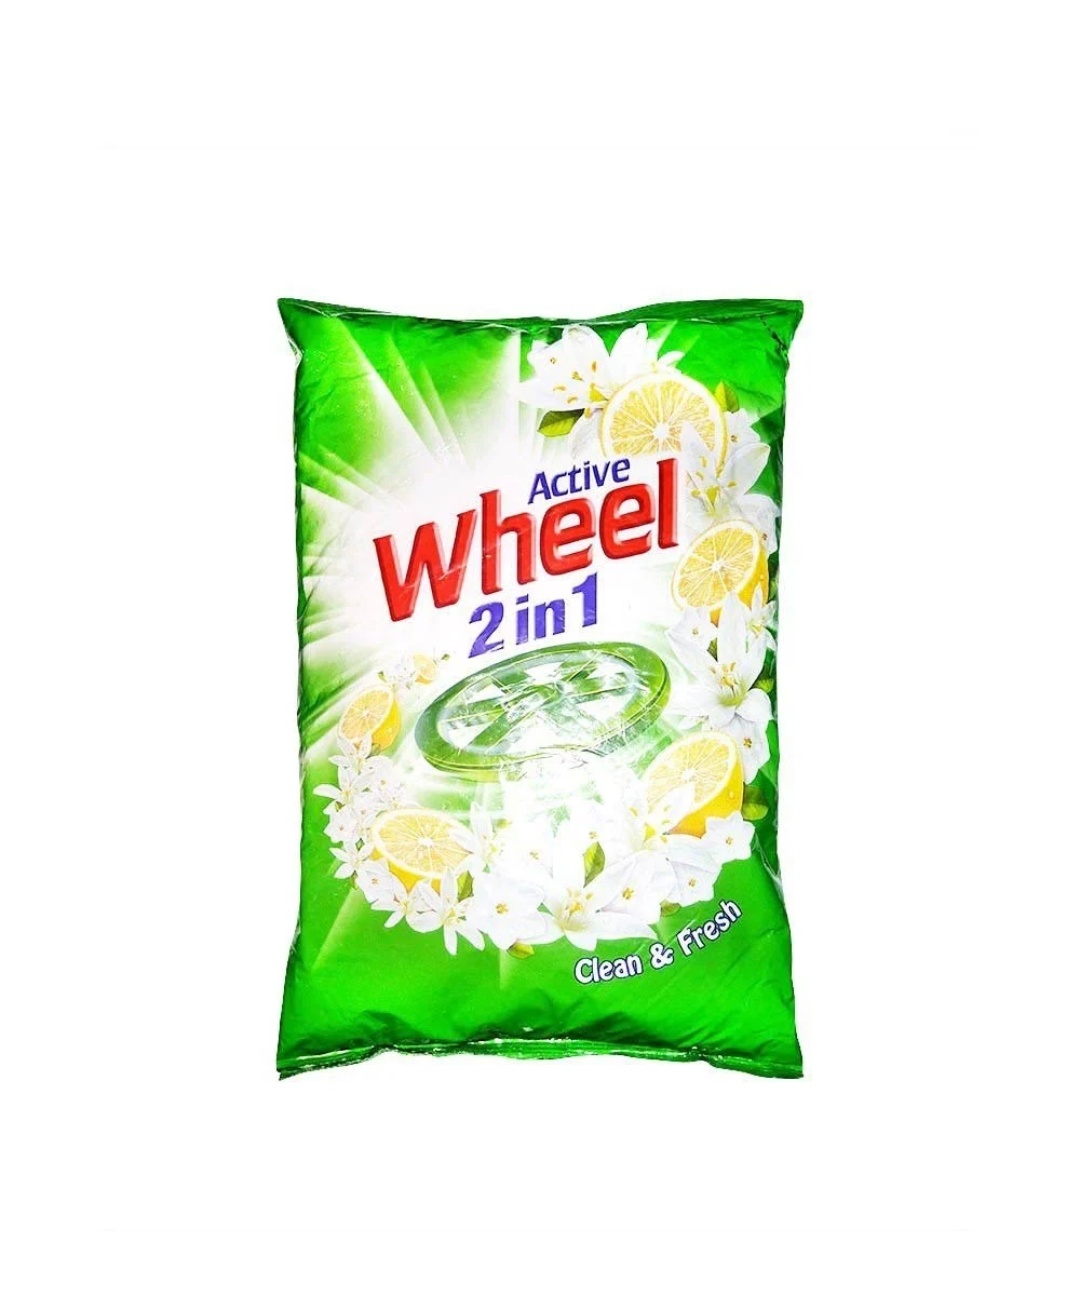 Active Wheel 2 in 1 Clean & Fresh Detergent Powder, 1 kg